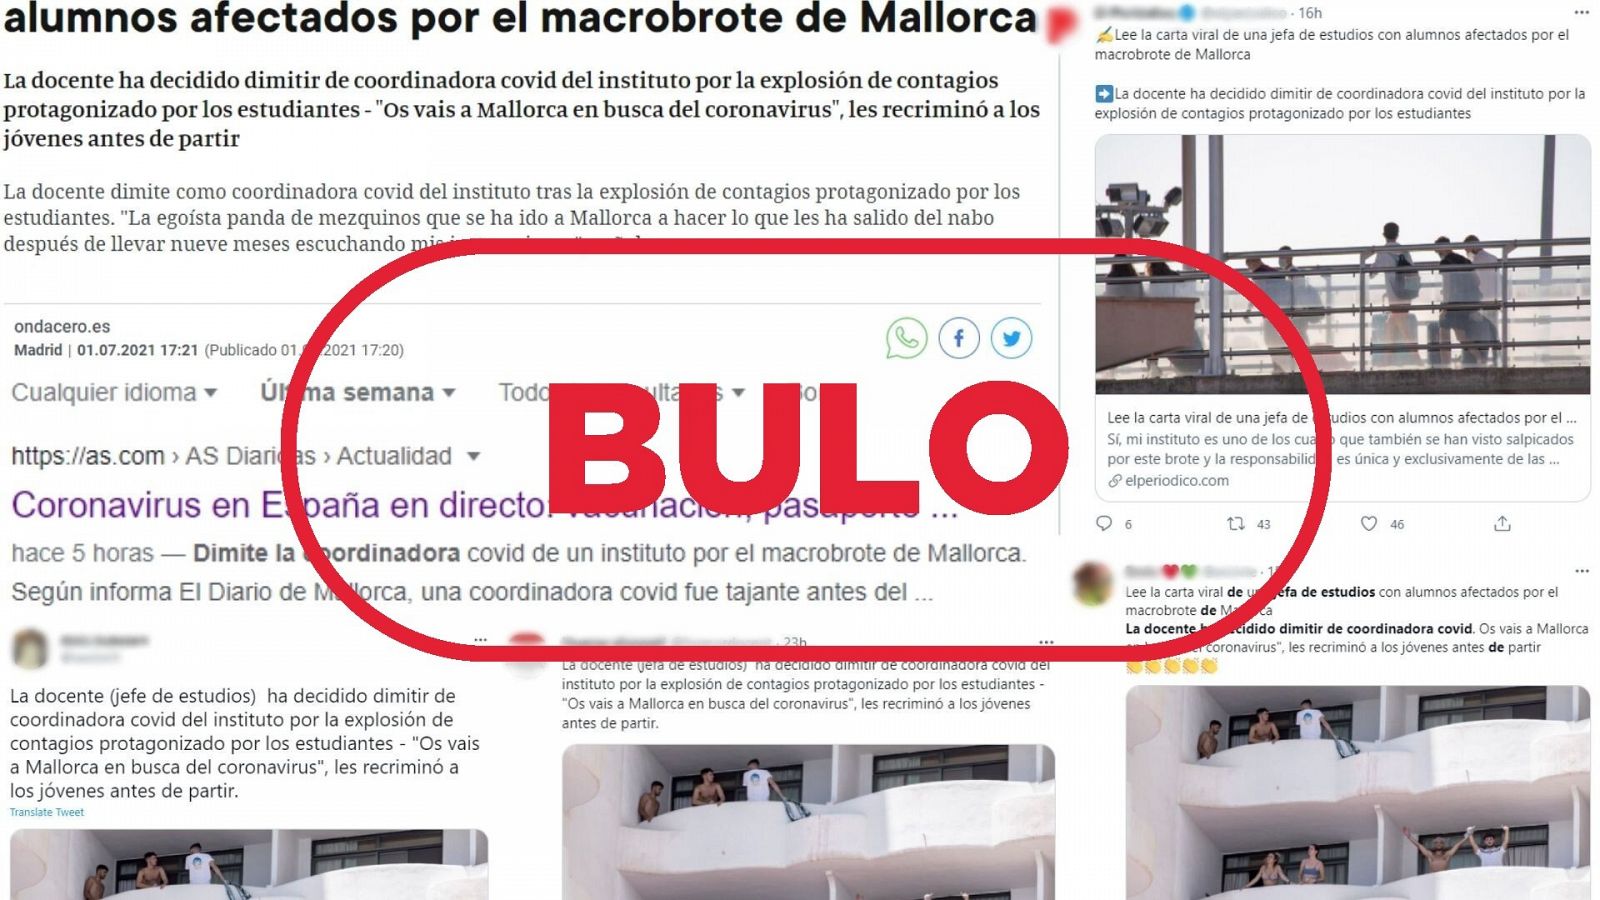 Varias publicaciones sobre la supuesta dimisión de una profesora en Mallorca con el sello de bulo.